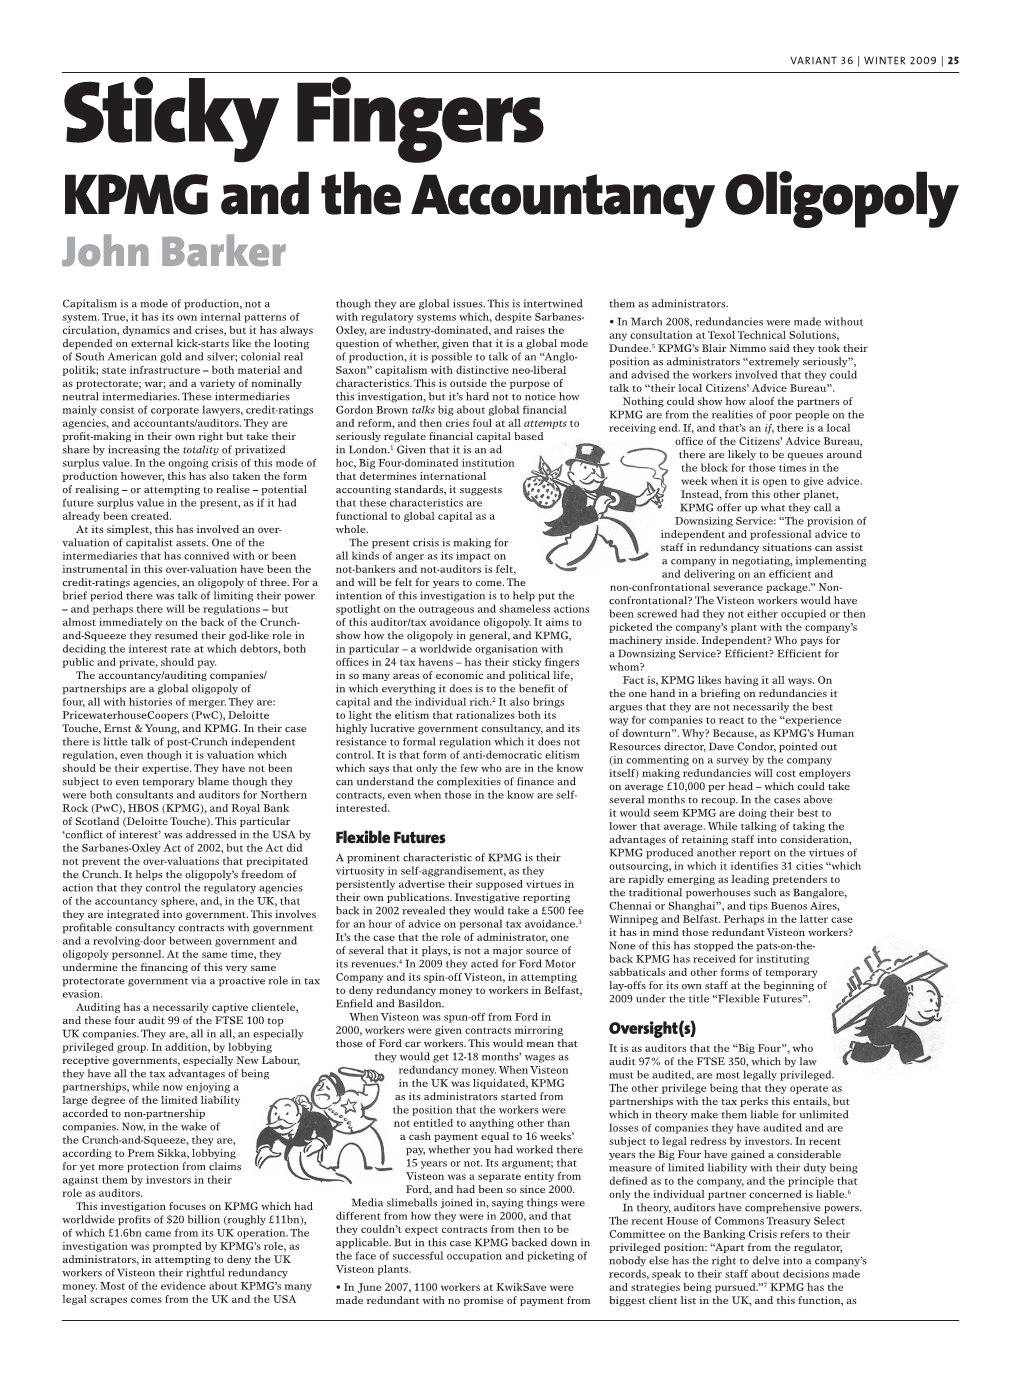 KPMG and the Accountancy Oligopoly John Barker